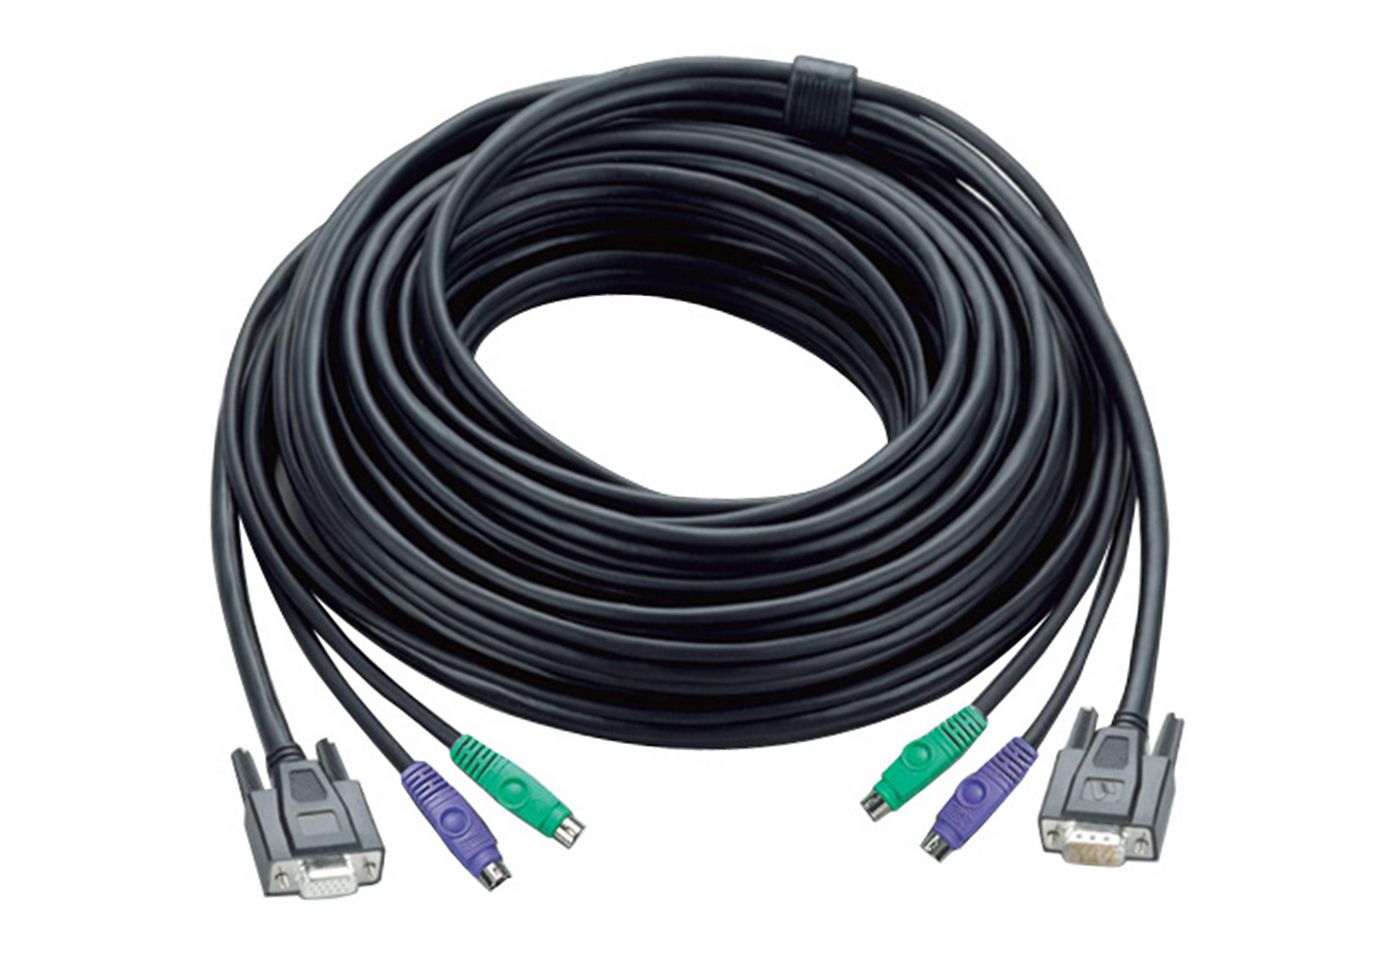 Aten 2L-1005P Video Extend Cable 5m 